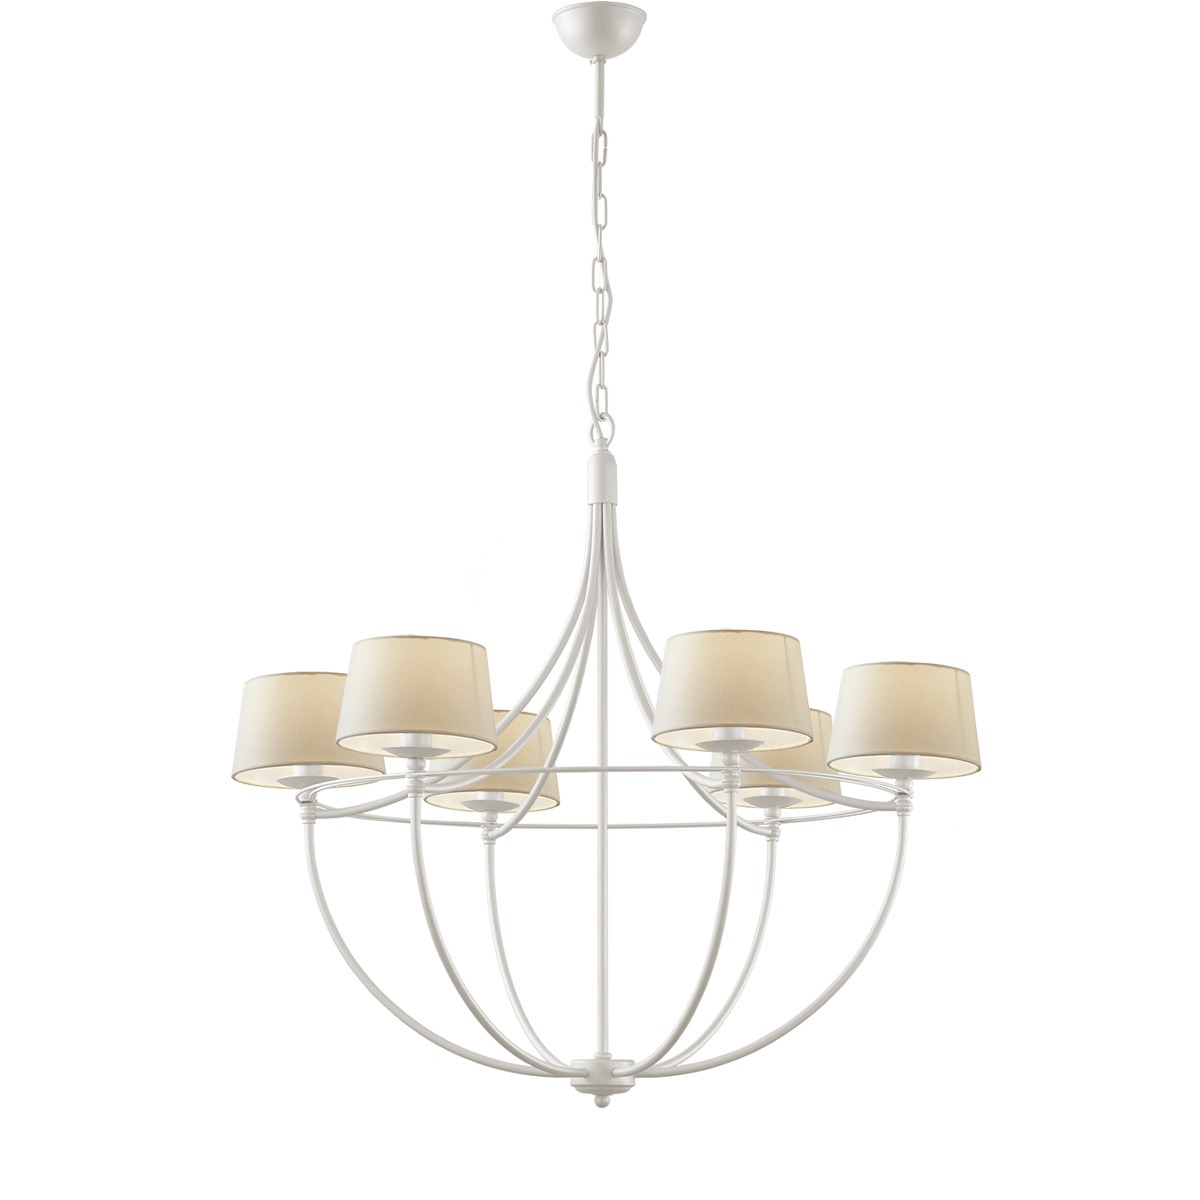 6φωτο φωτιστικό με καπέλα σε λευκό χρώμα VILLAGE white 6-bulb chandelier with shades